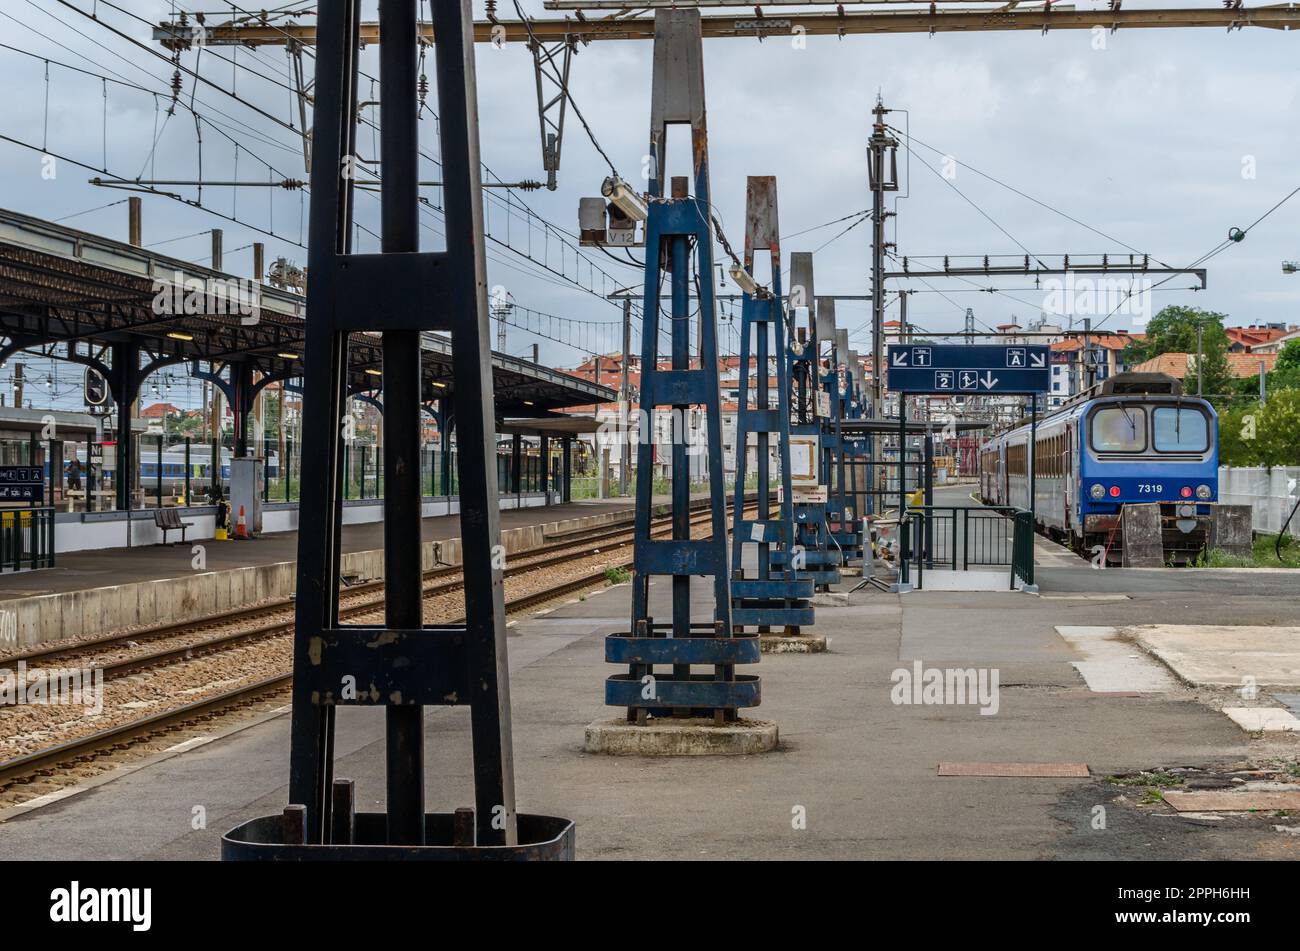 HENDAYE, FRANKREICH - 16. AUGUST 2013: Züge am Bahnhof Hendaye im Süden Frankreichs, einem Grenzanschlusspunkt zu Spanien Stockfoto